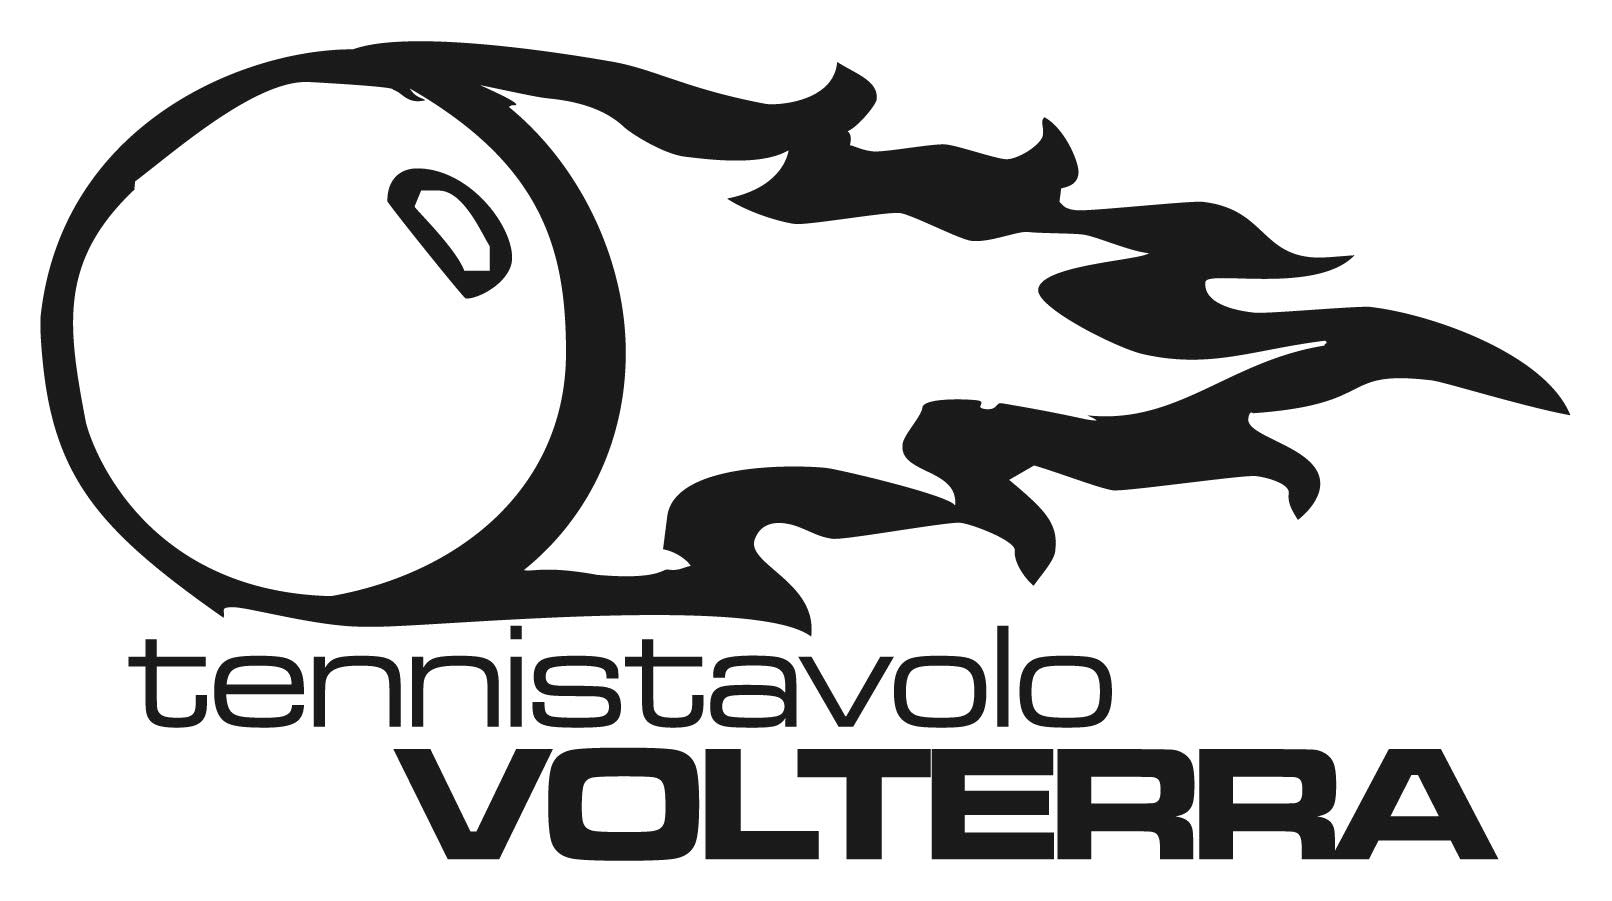 Tennis Tavolo Volterra